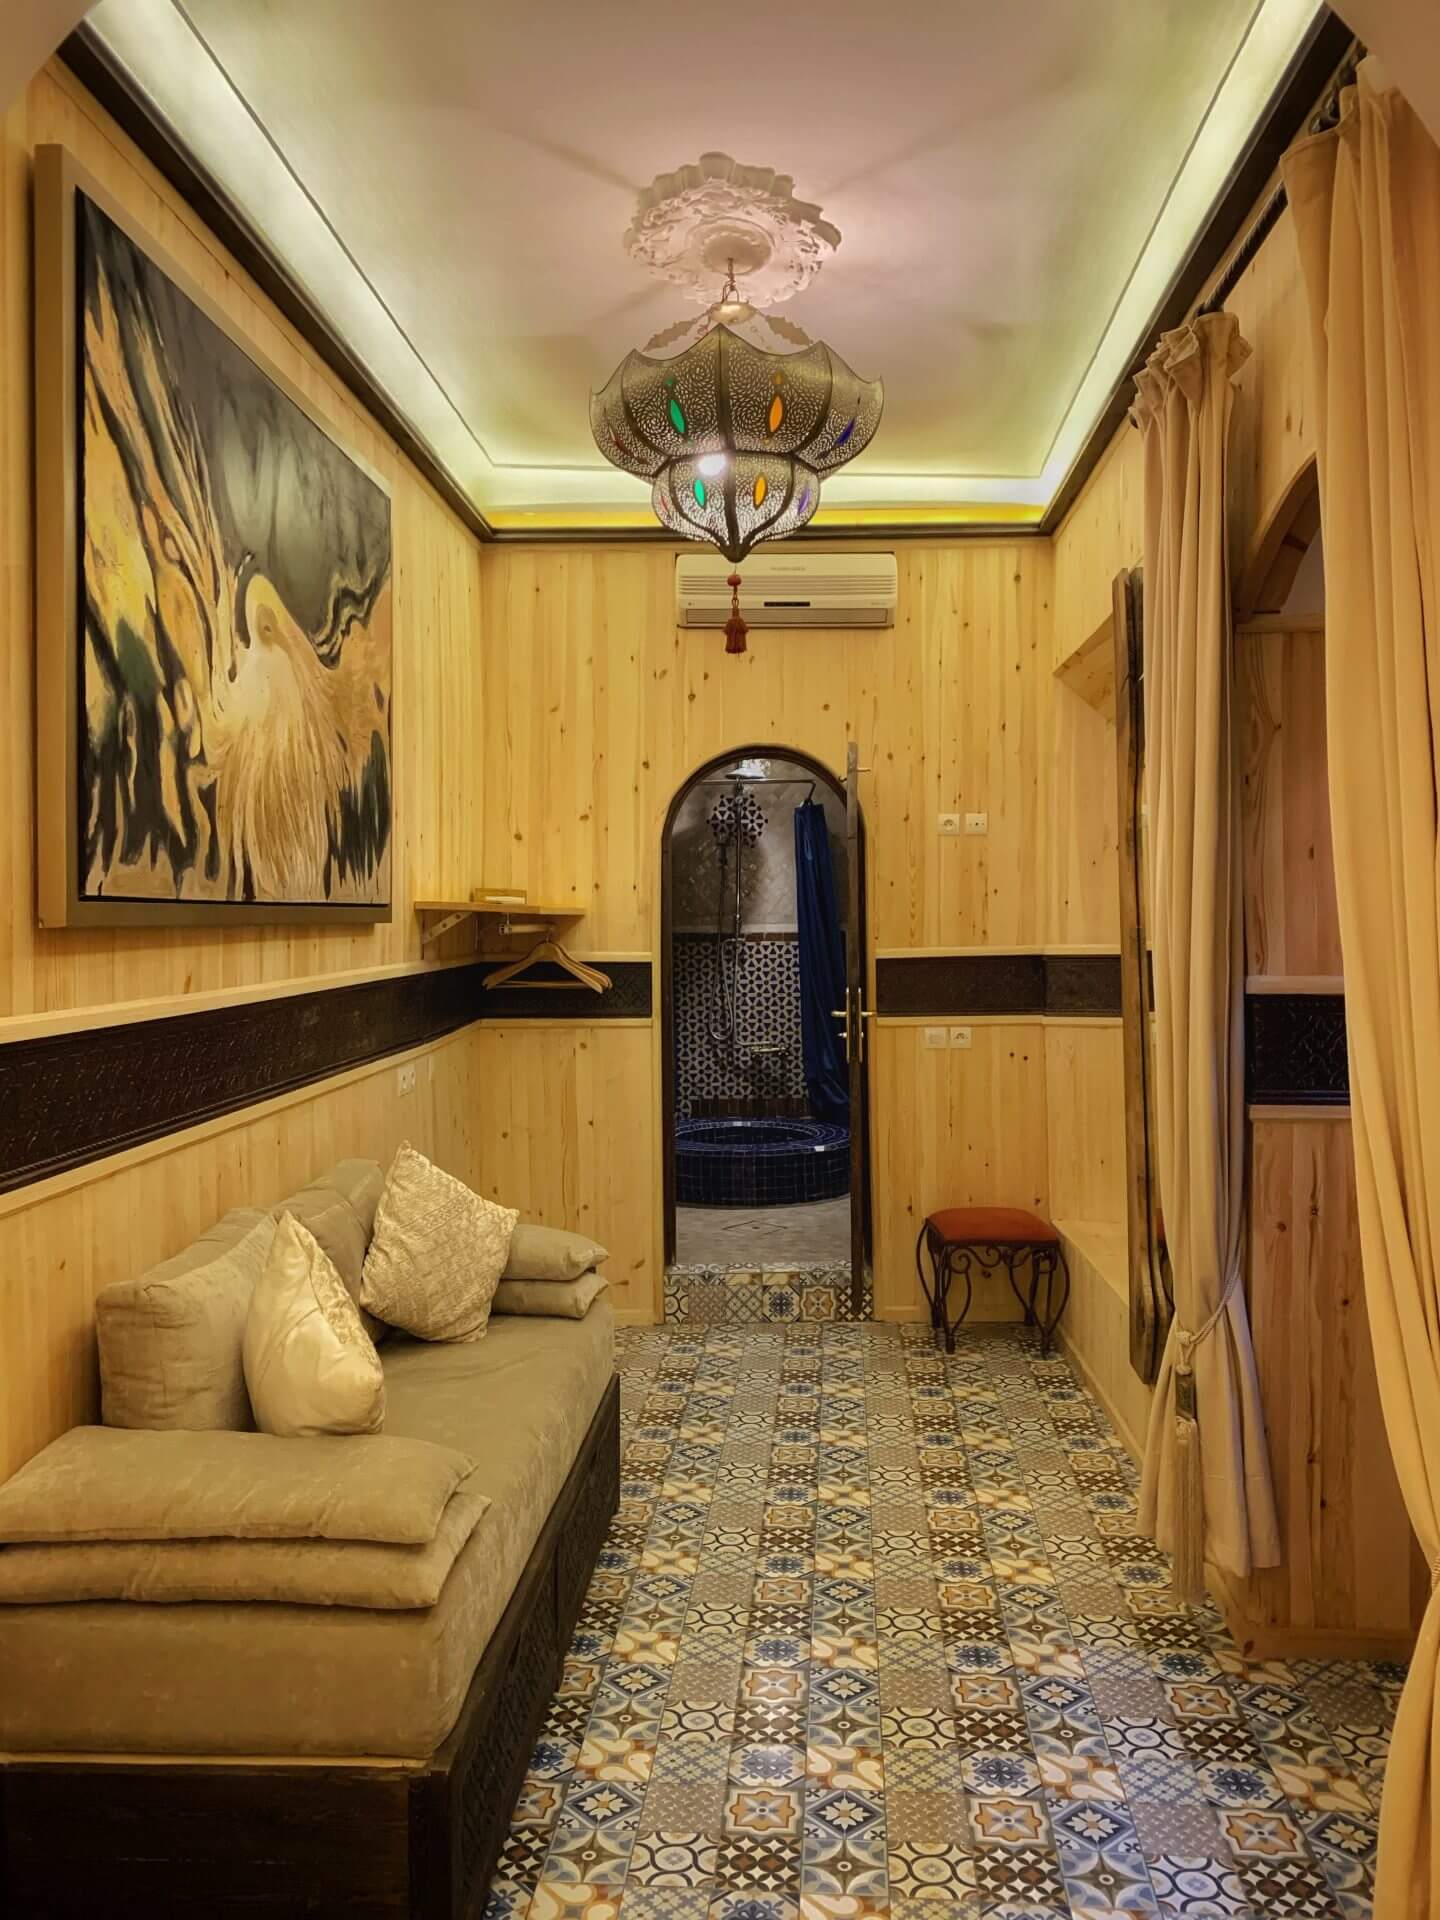 Marokkanisches Sofa und Holzwände